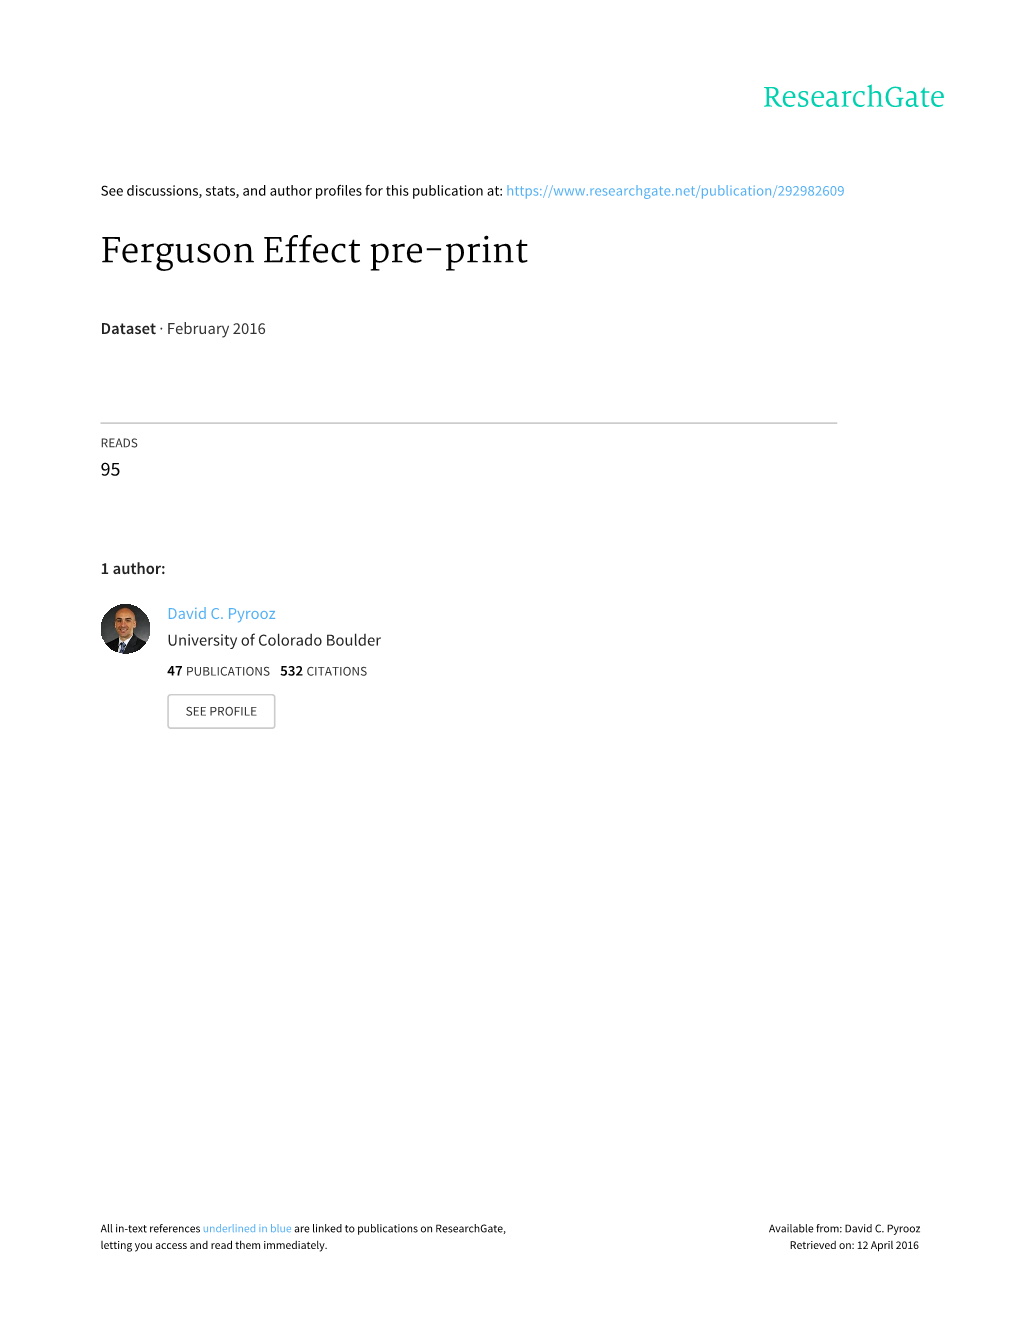 Ferguson Effect Pre-Print